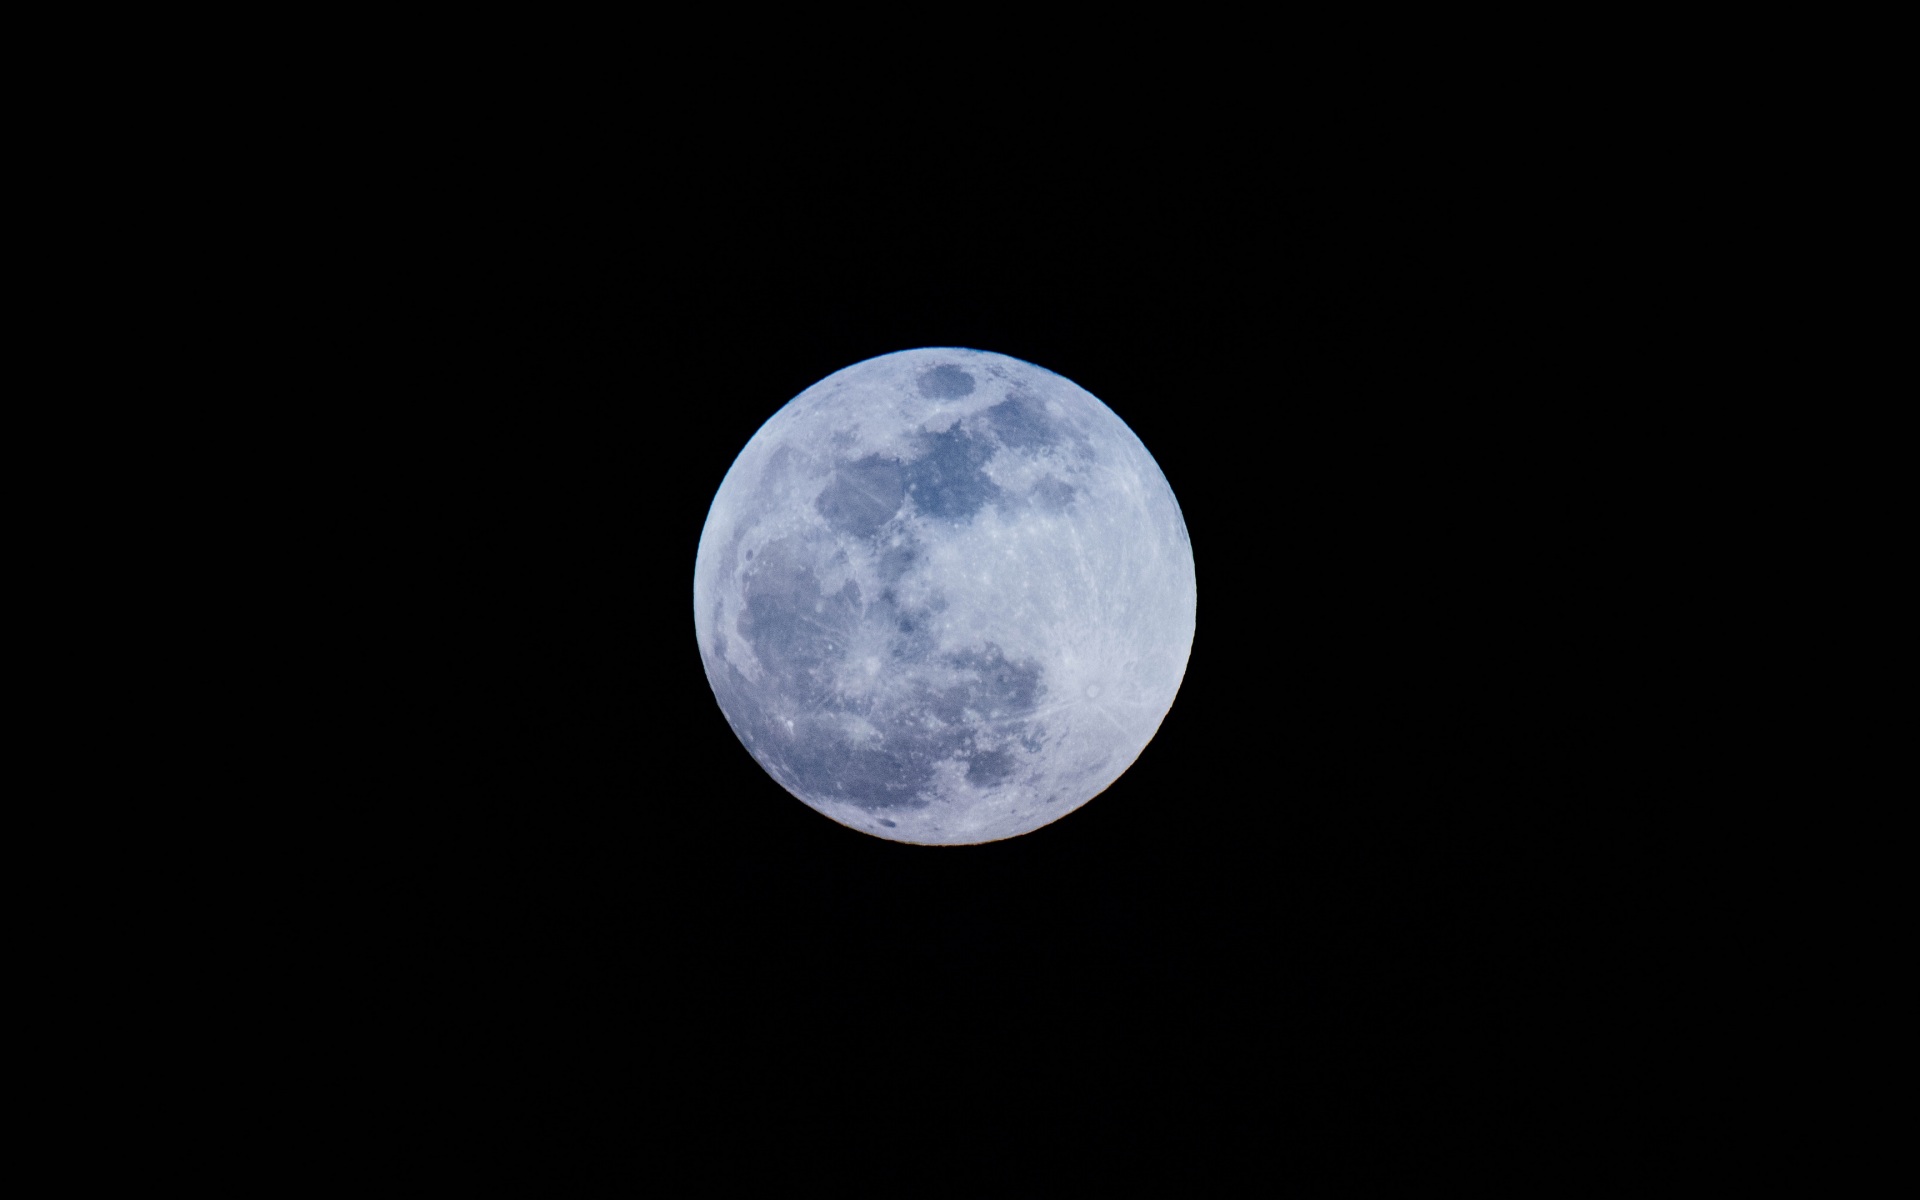 Mặt trăng đầy là một trong những hiện tượng thiên văn đẹp nhất của đêm. Hãy ngắm nhìn các hình ảnh đầy tính nghệ thuật của mặt trăng đầy để cảm nhận thêm lòng yêu thích và sự bình yên mà nó mang lại.